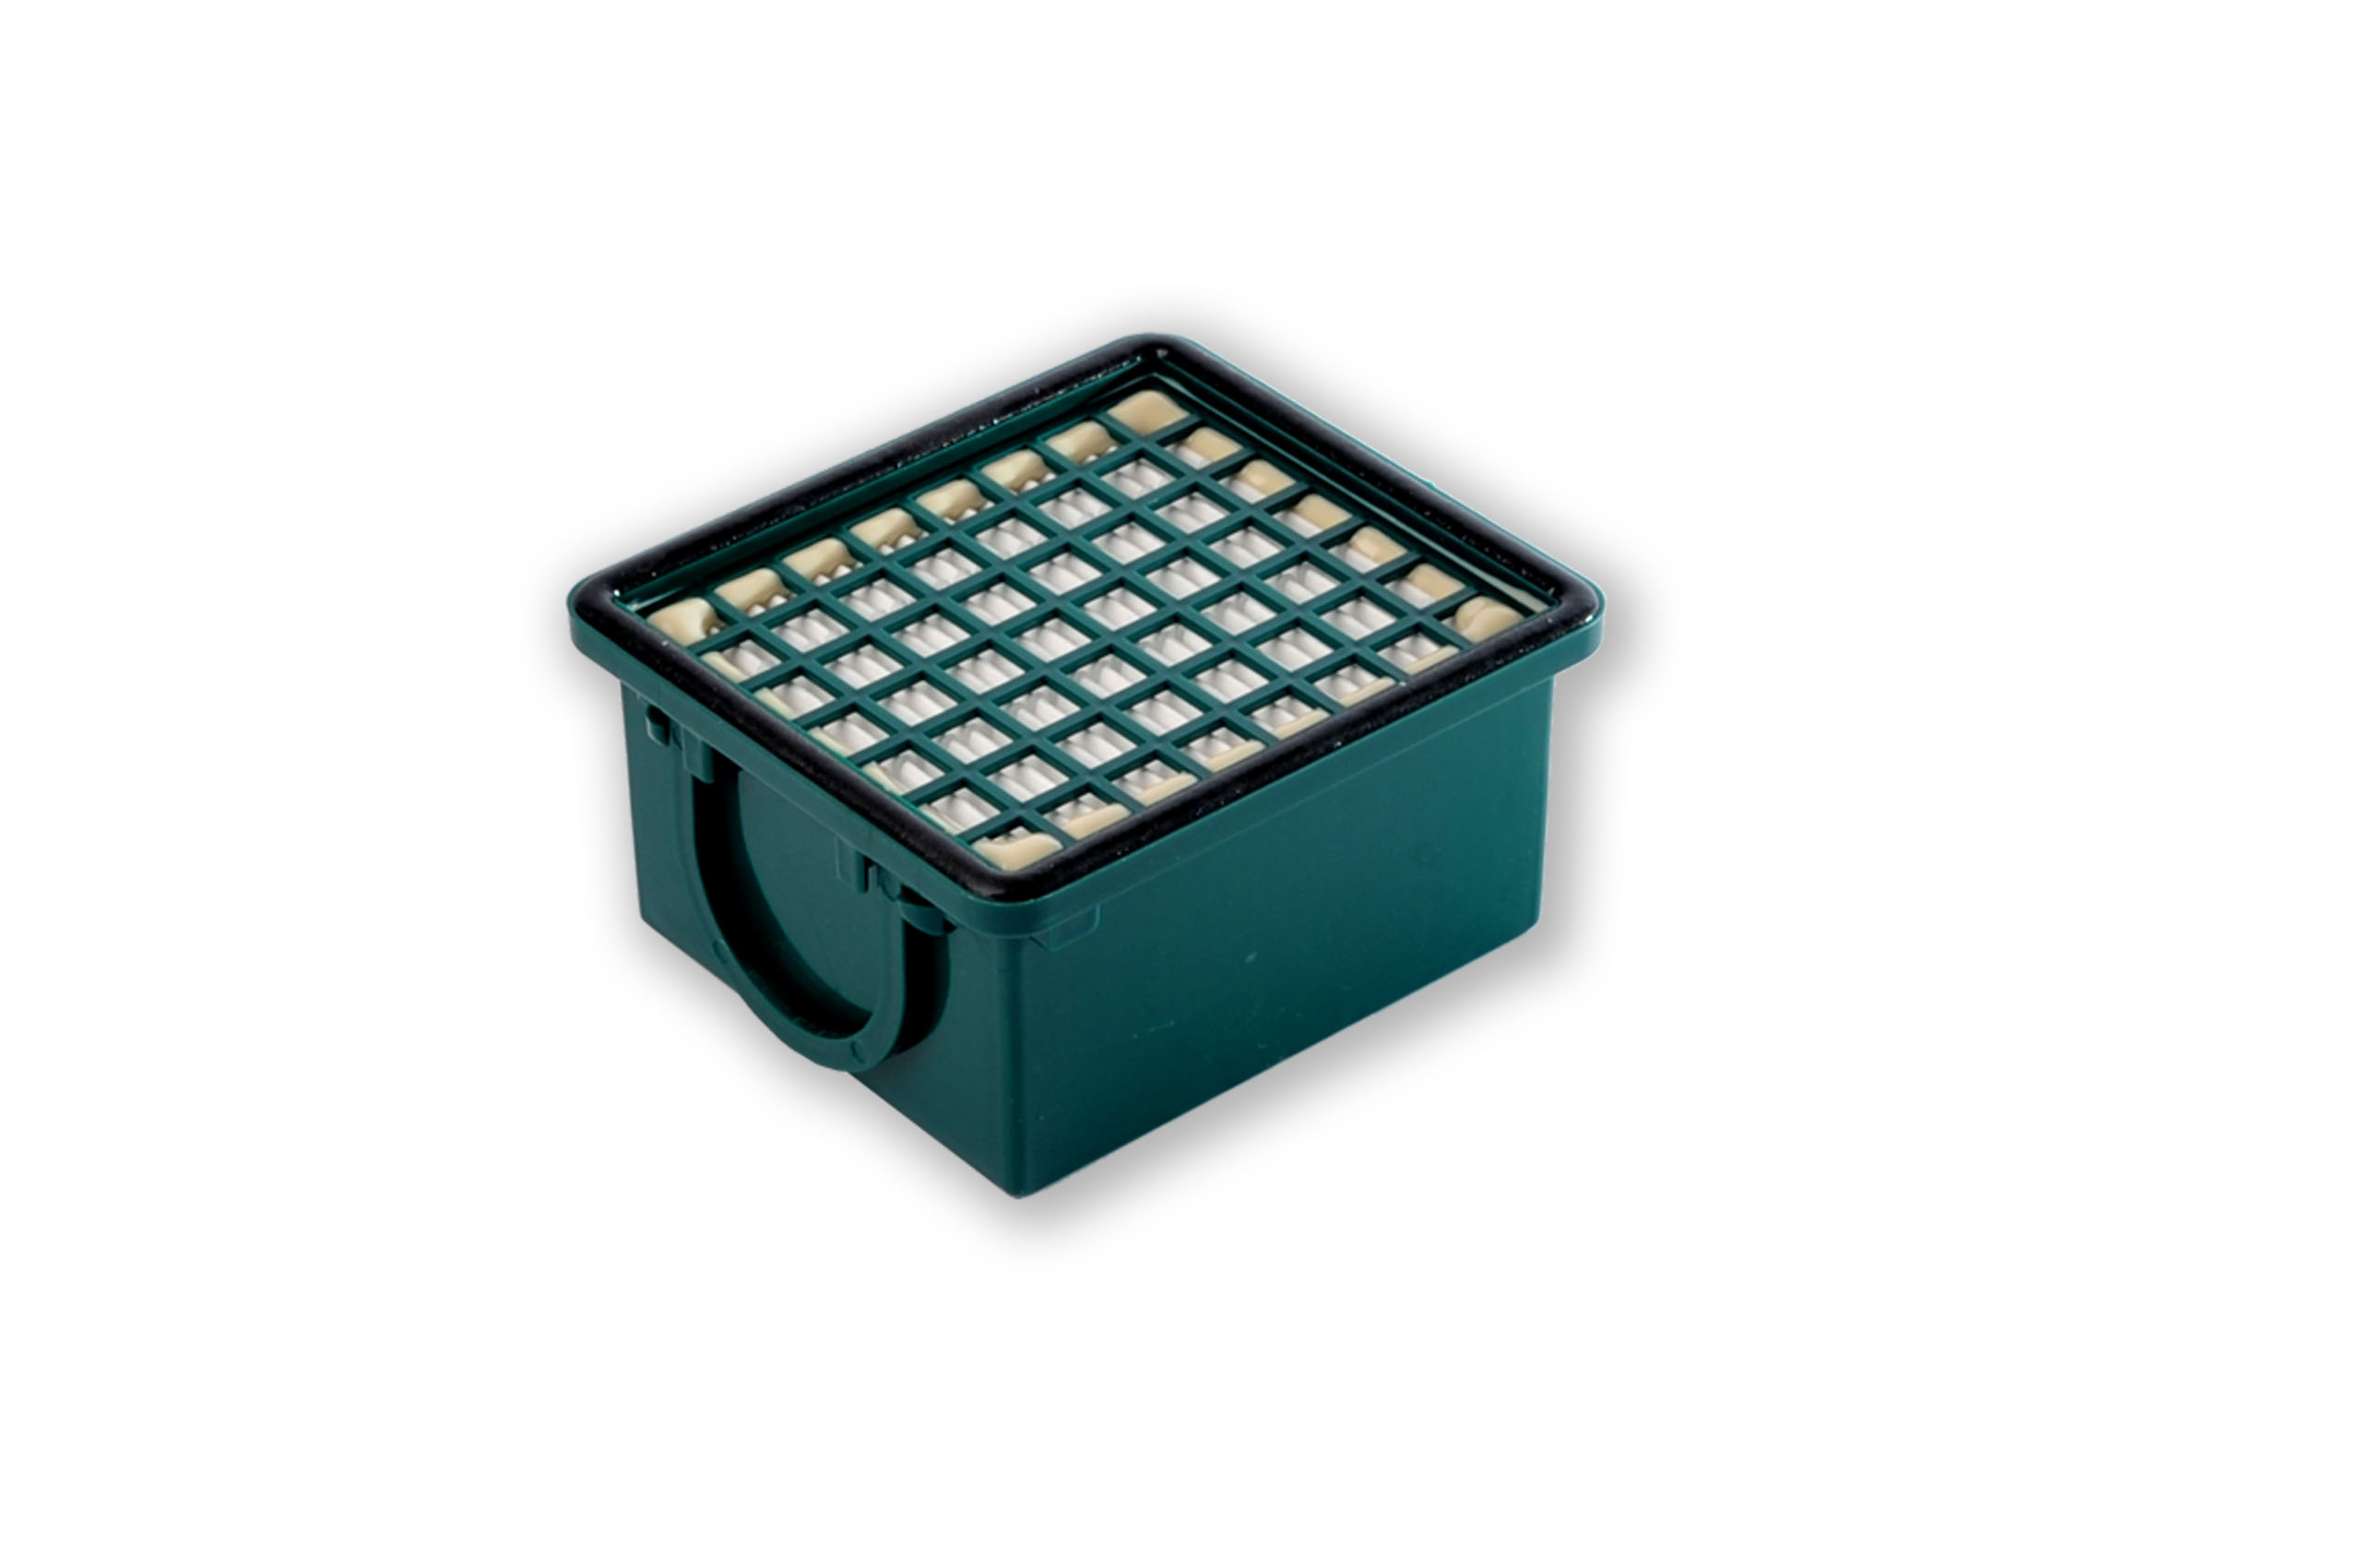 Filterset kompatibel mit Vorwerk Kobold VK 130, VK 131, SC: 10 Staubsaugerbeutel ähnlich FP 130, FP 131 , Staubbeutel + 1 Hygiene-Mikrofilter HEPA